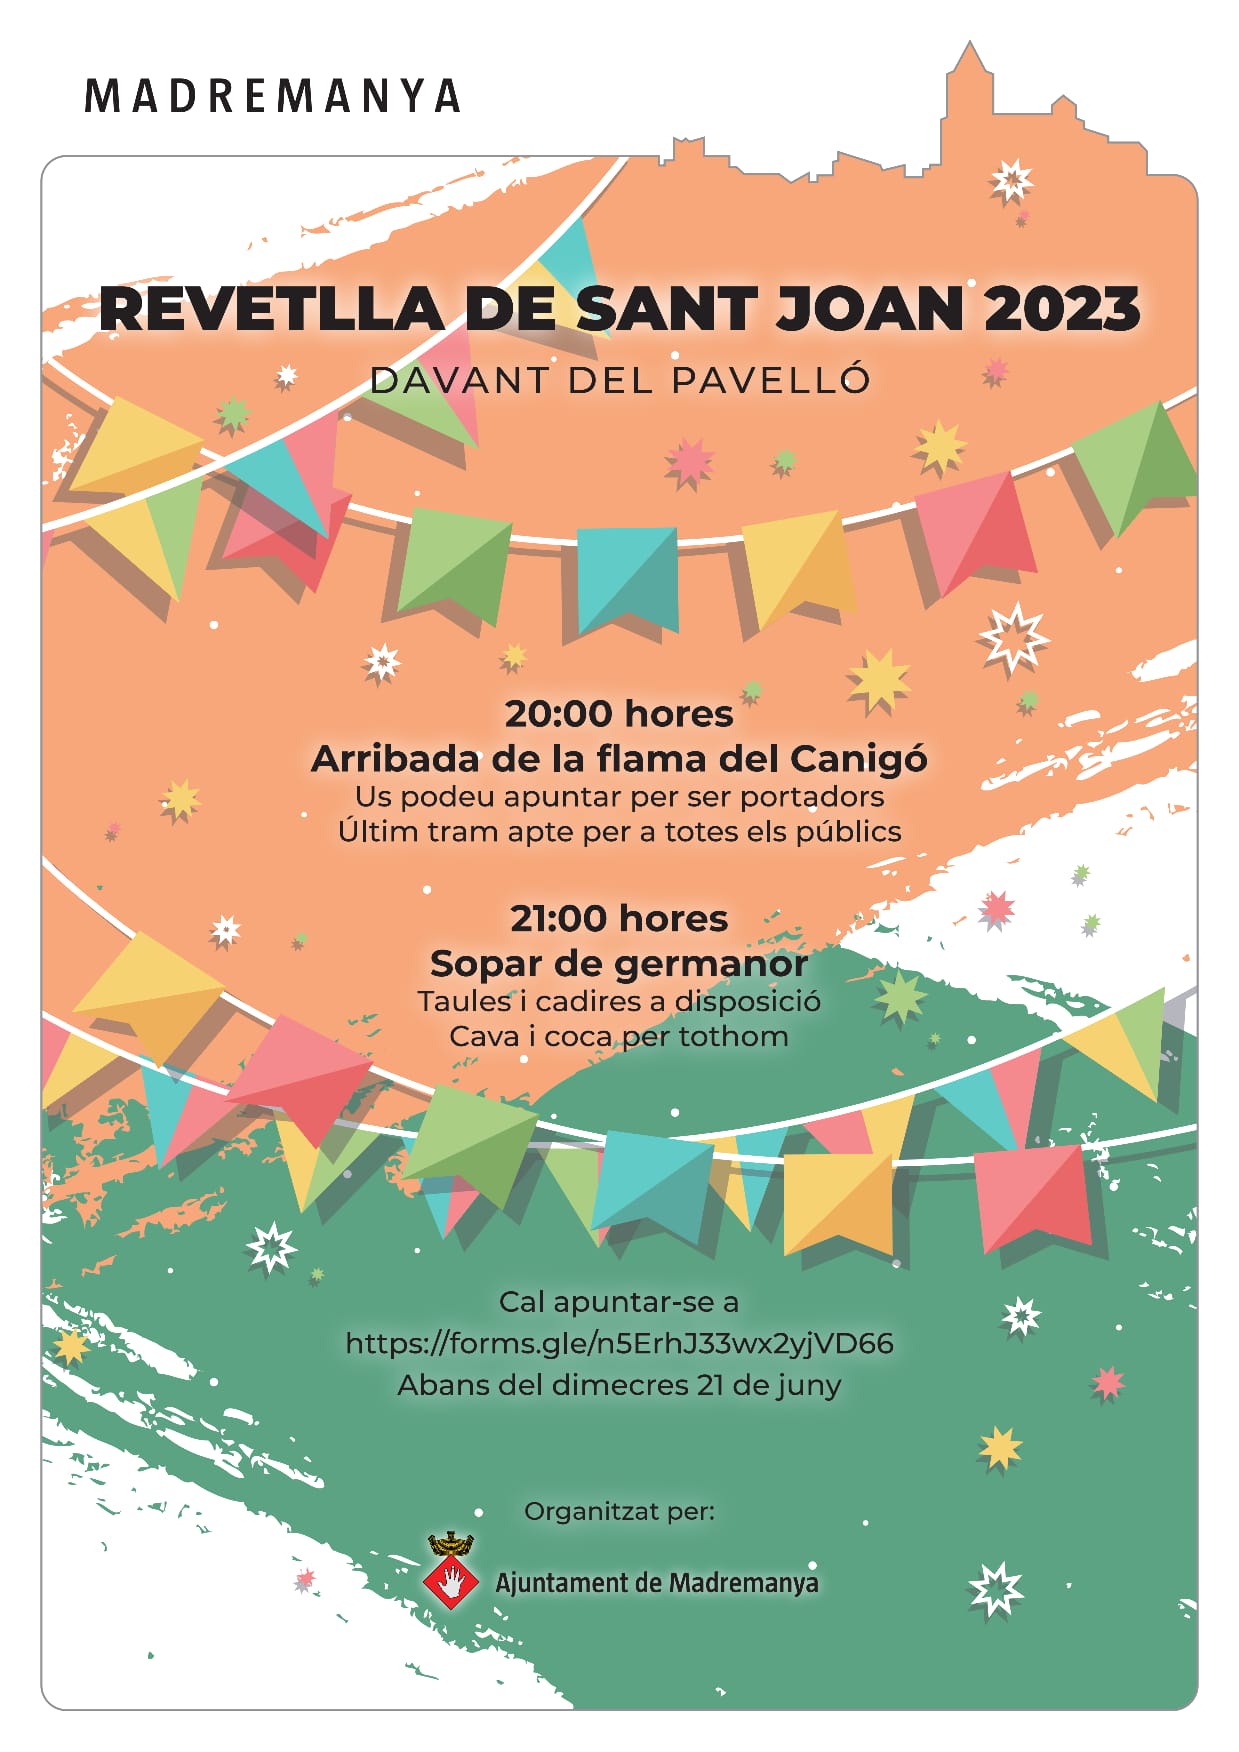 REVETLLA DE SANT JOAN 2023